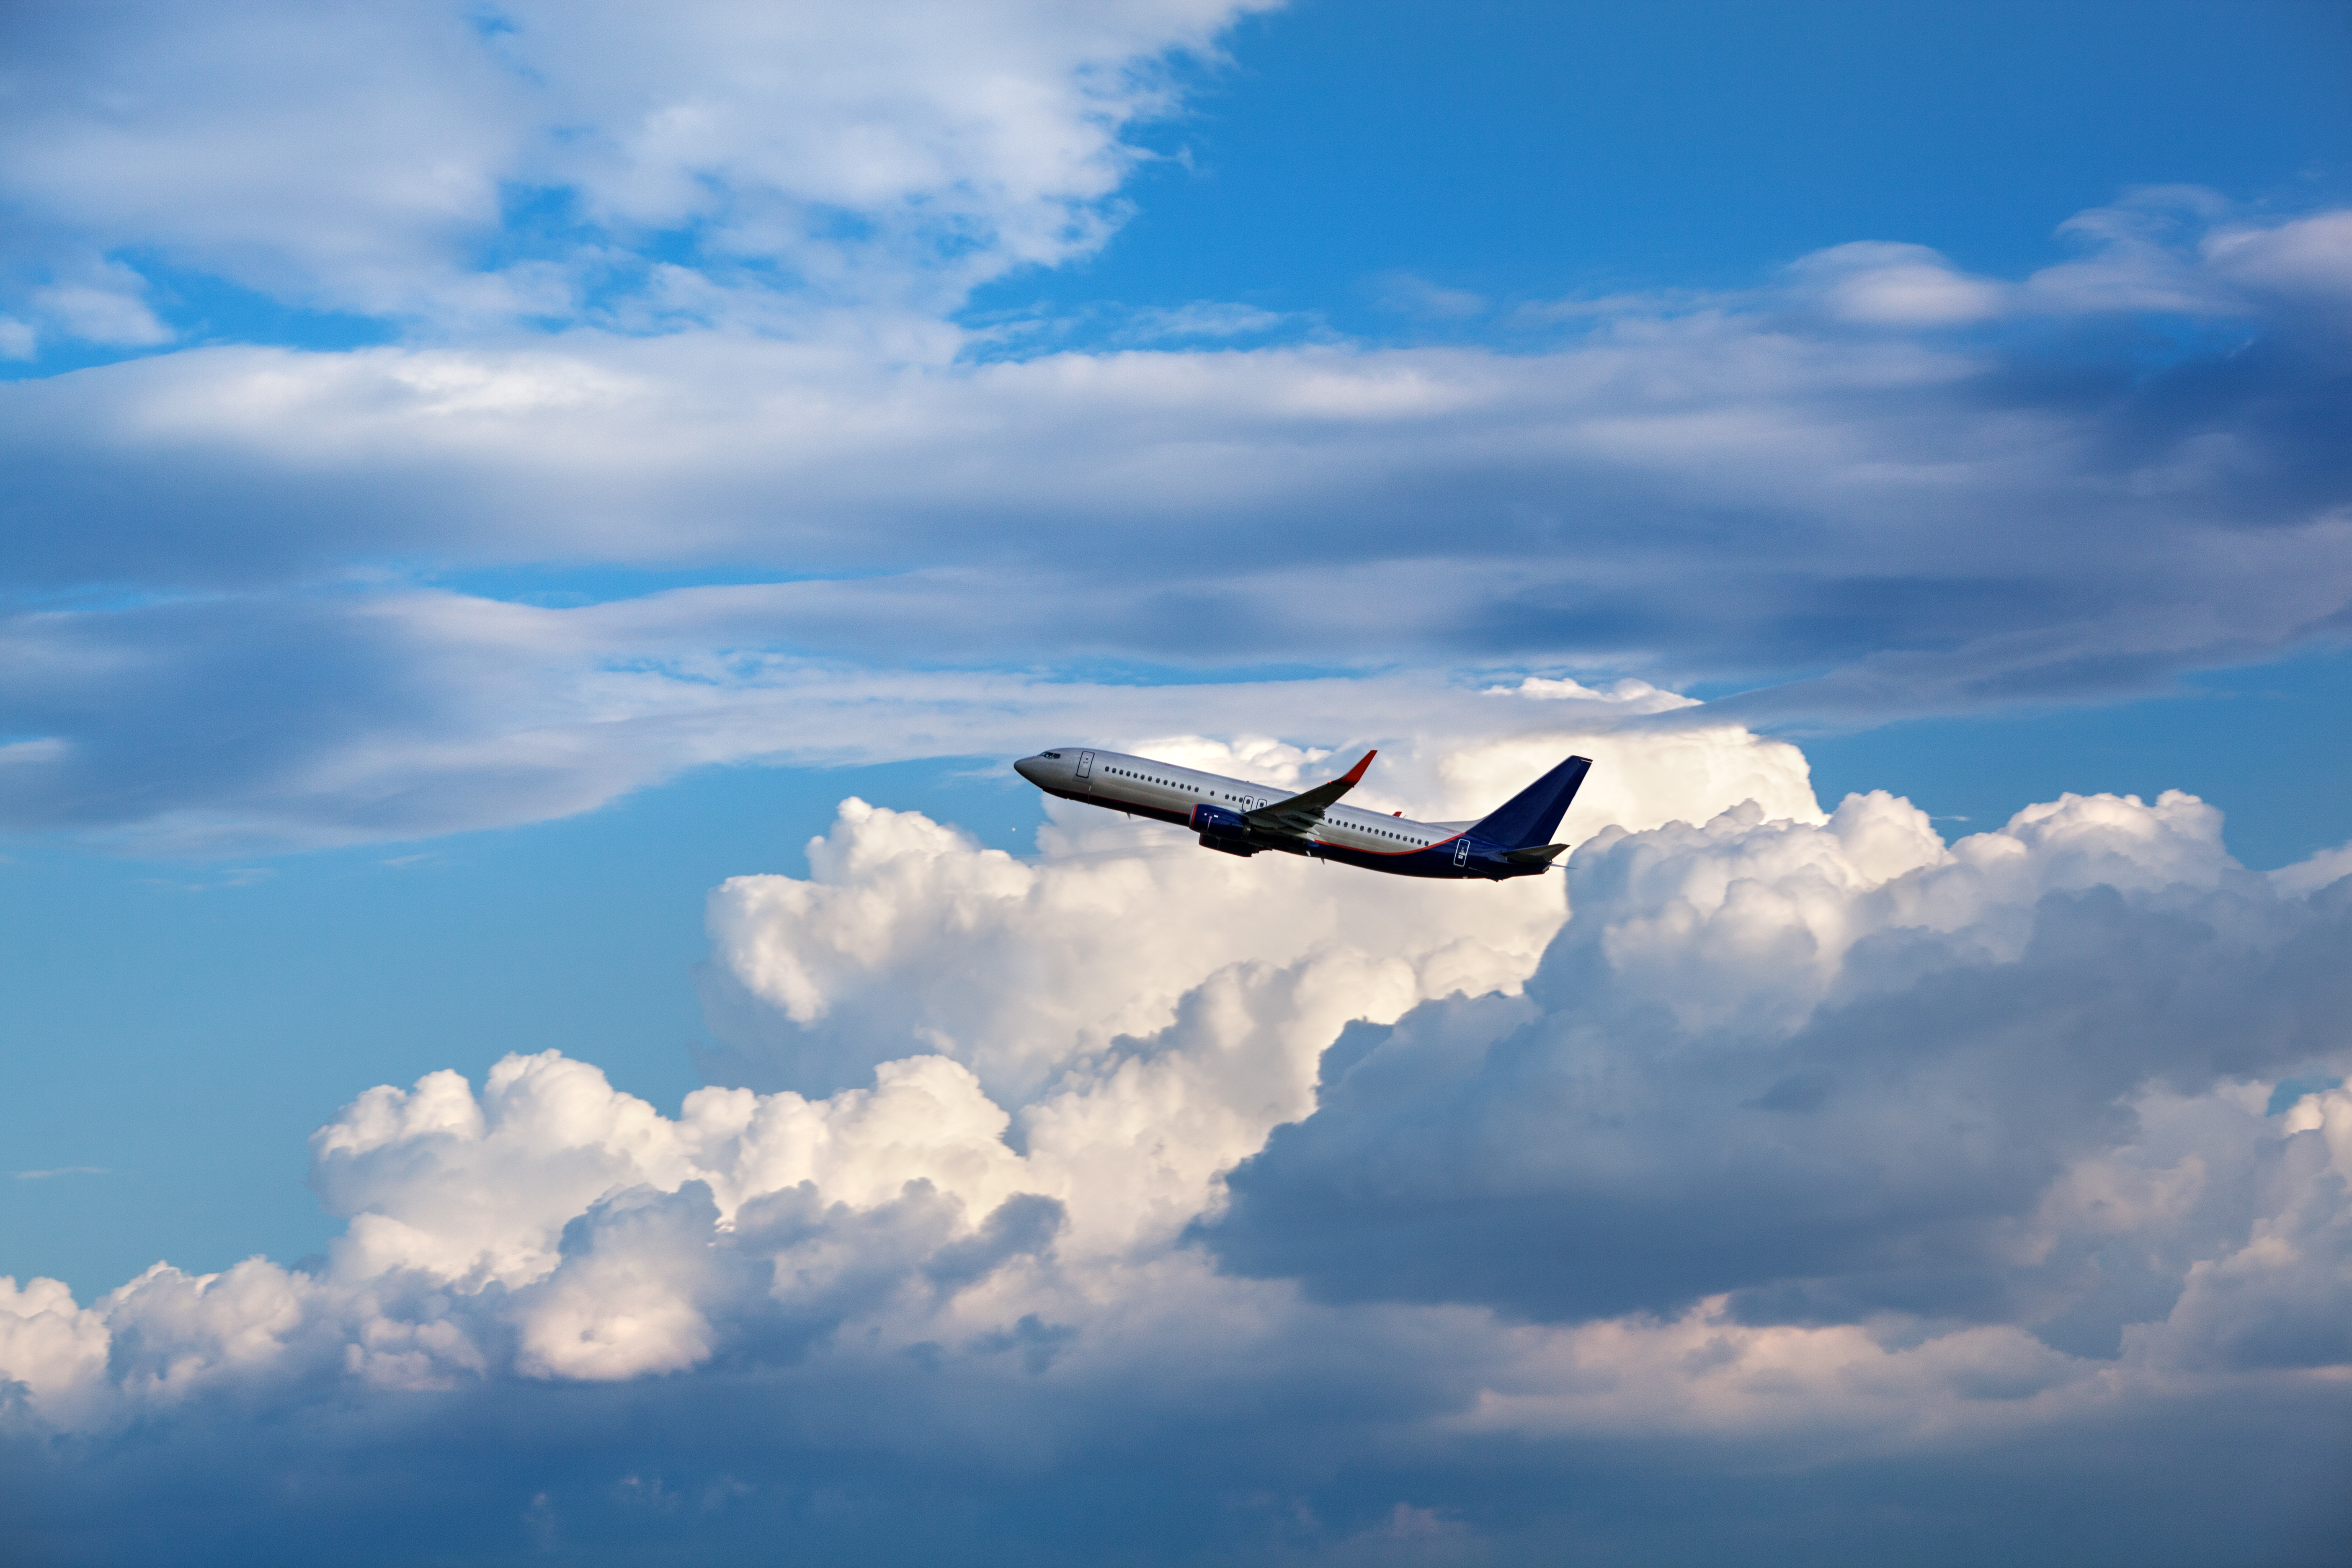 El informe Take off dispone las nuevas directrices globales definitivas para retomar la actividad aérea. Cómo será la "nueva normalidad" al momento de volar en avión.